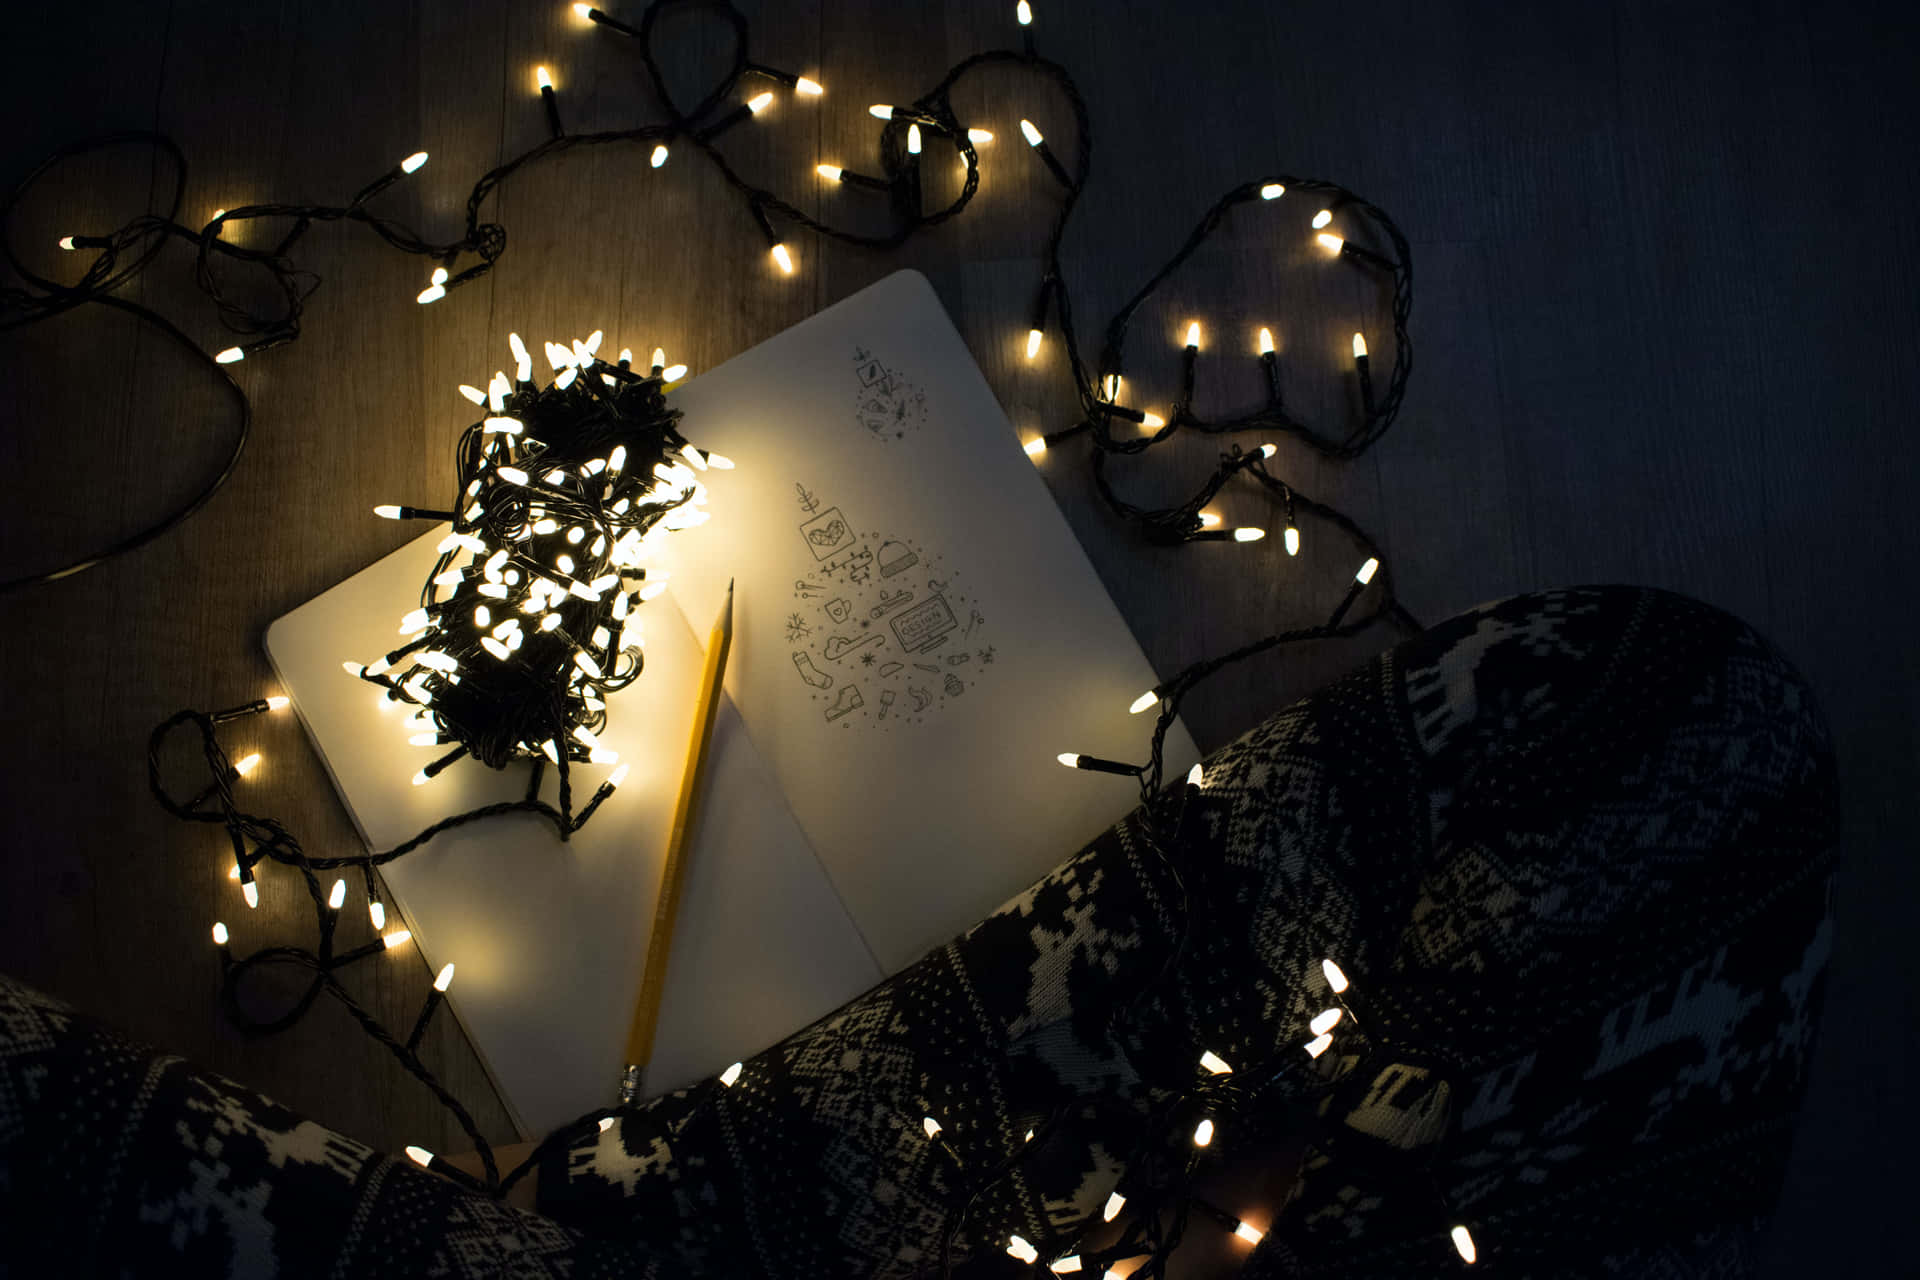 Lys op dine ferier med disse festlige julelys